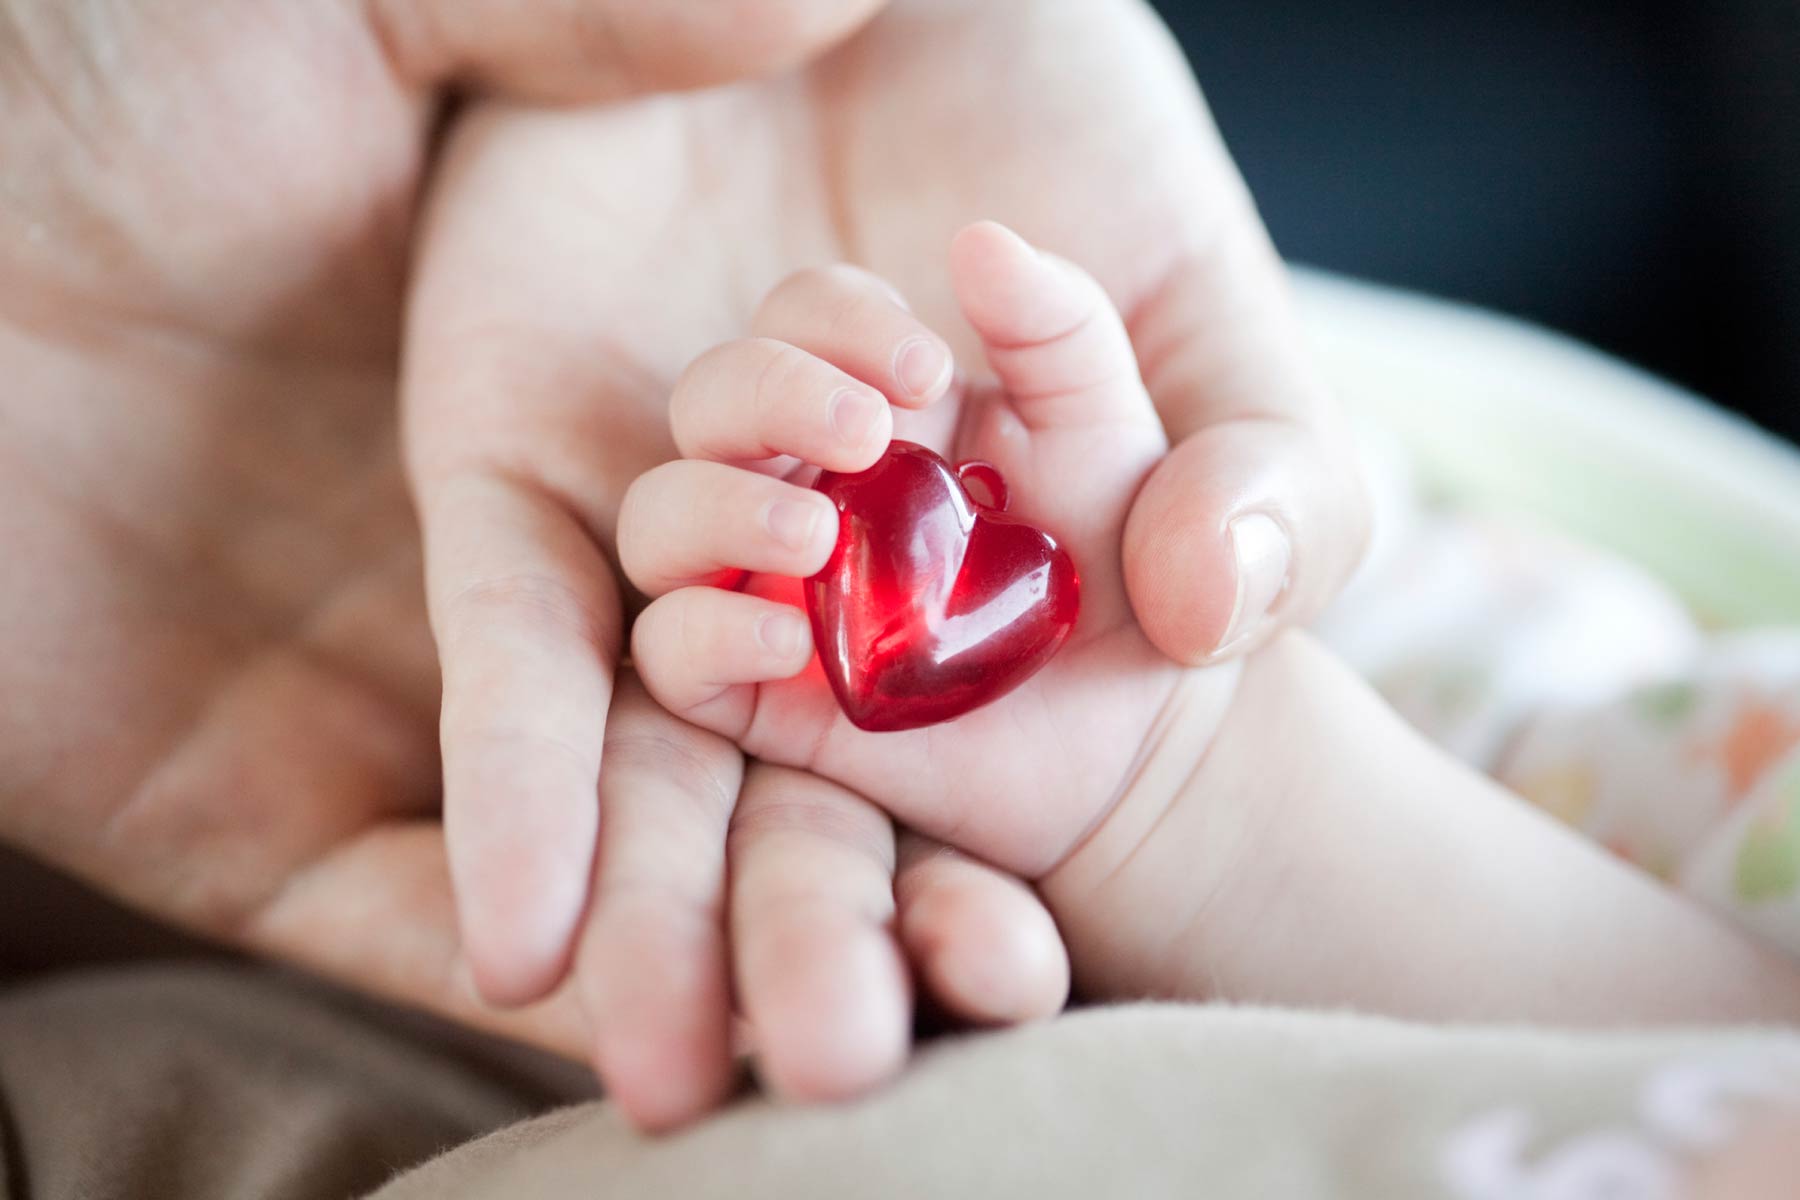 Copiii născuţi cu malformații cardiace congenitale vor fi operați cu bani din contul statului